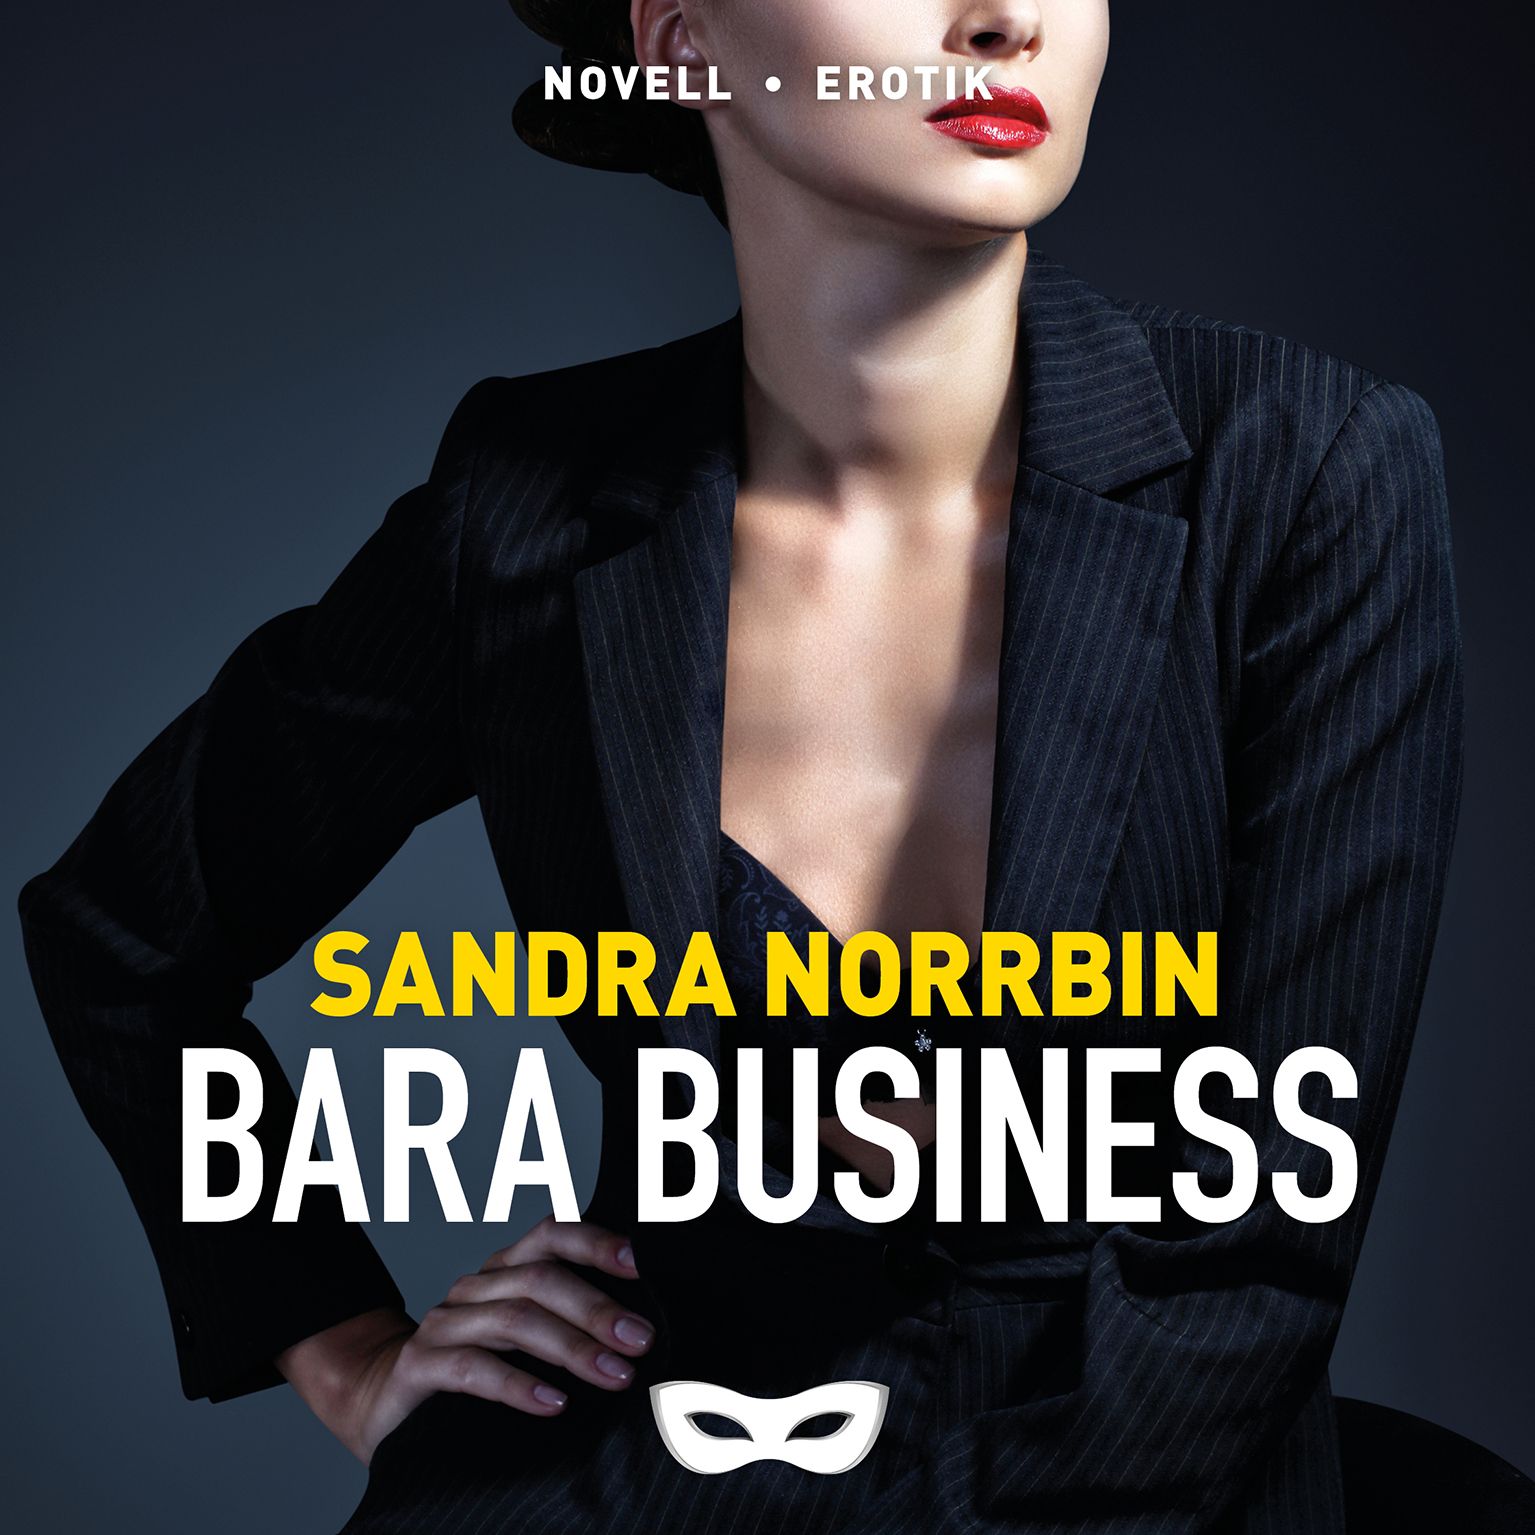 Bara business, lydbog af Sandra Norrbin